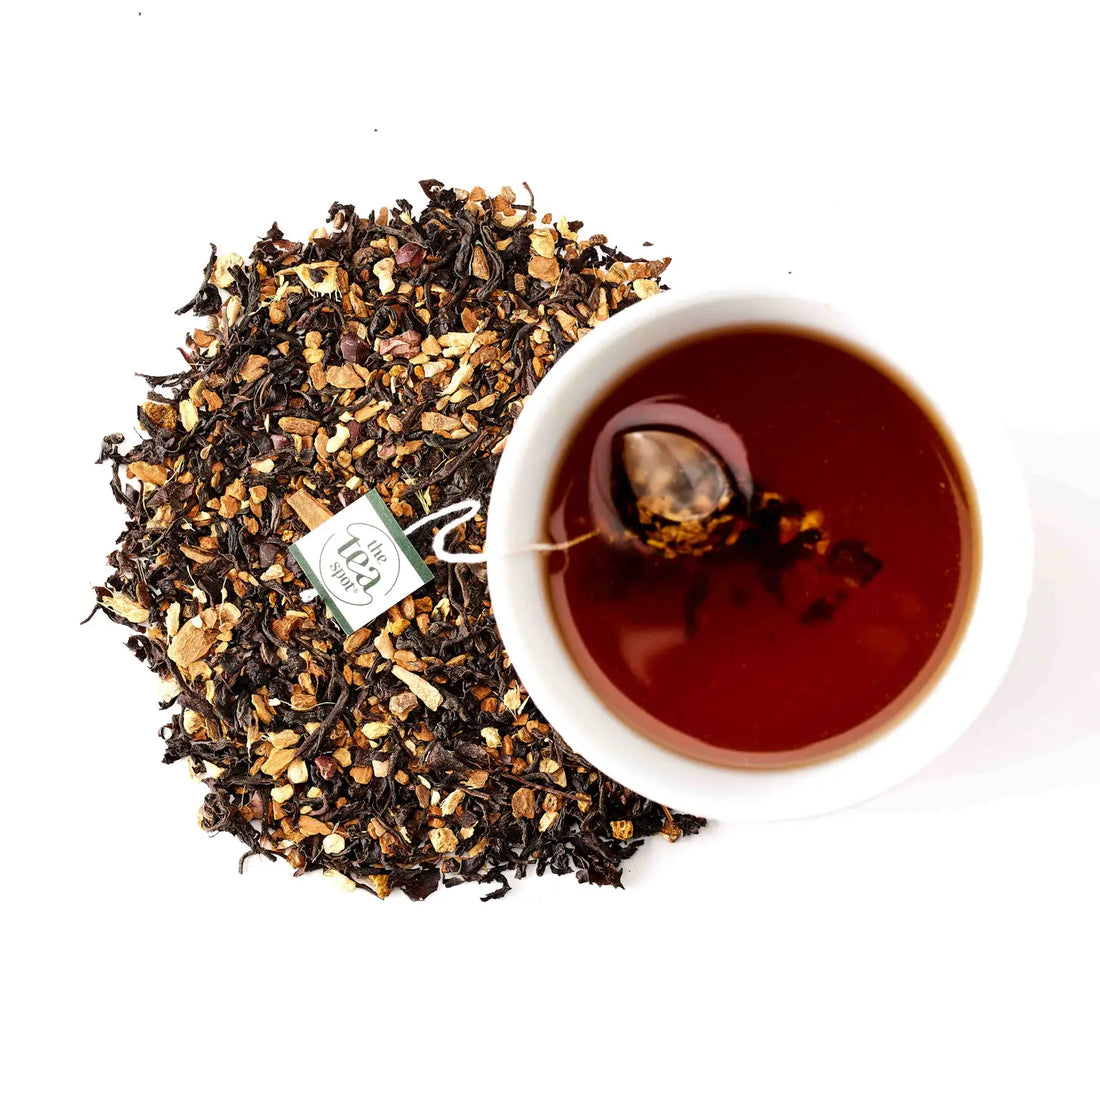 Mile High Chai, Organic Tea